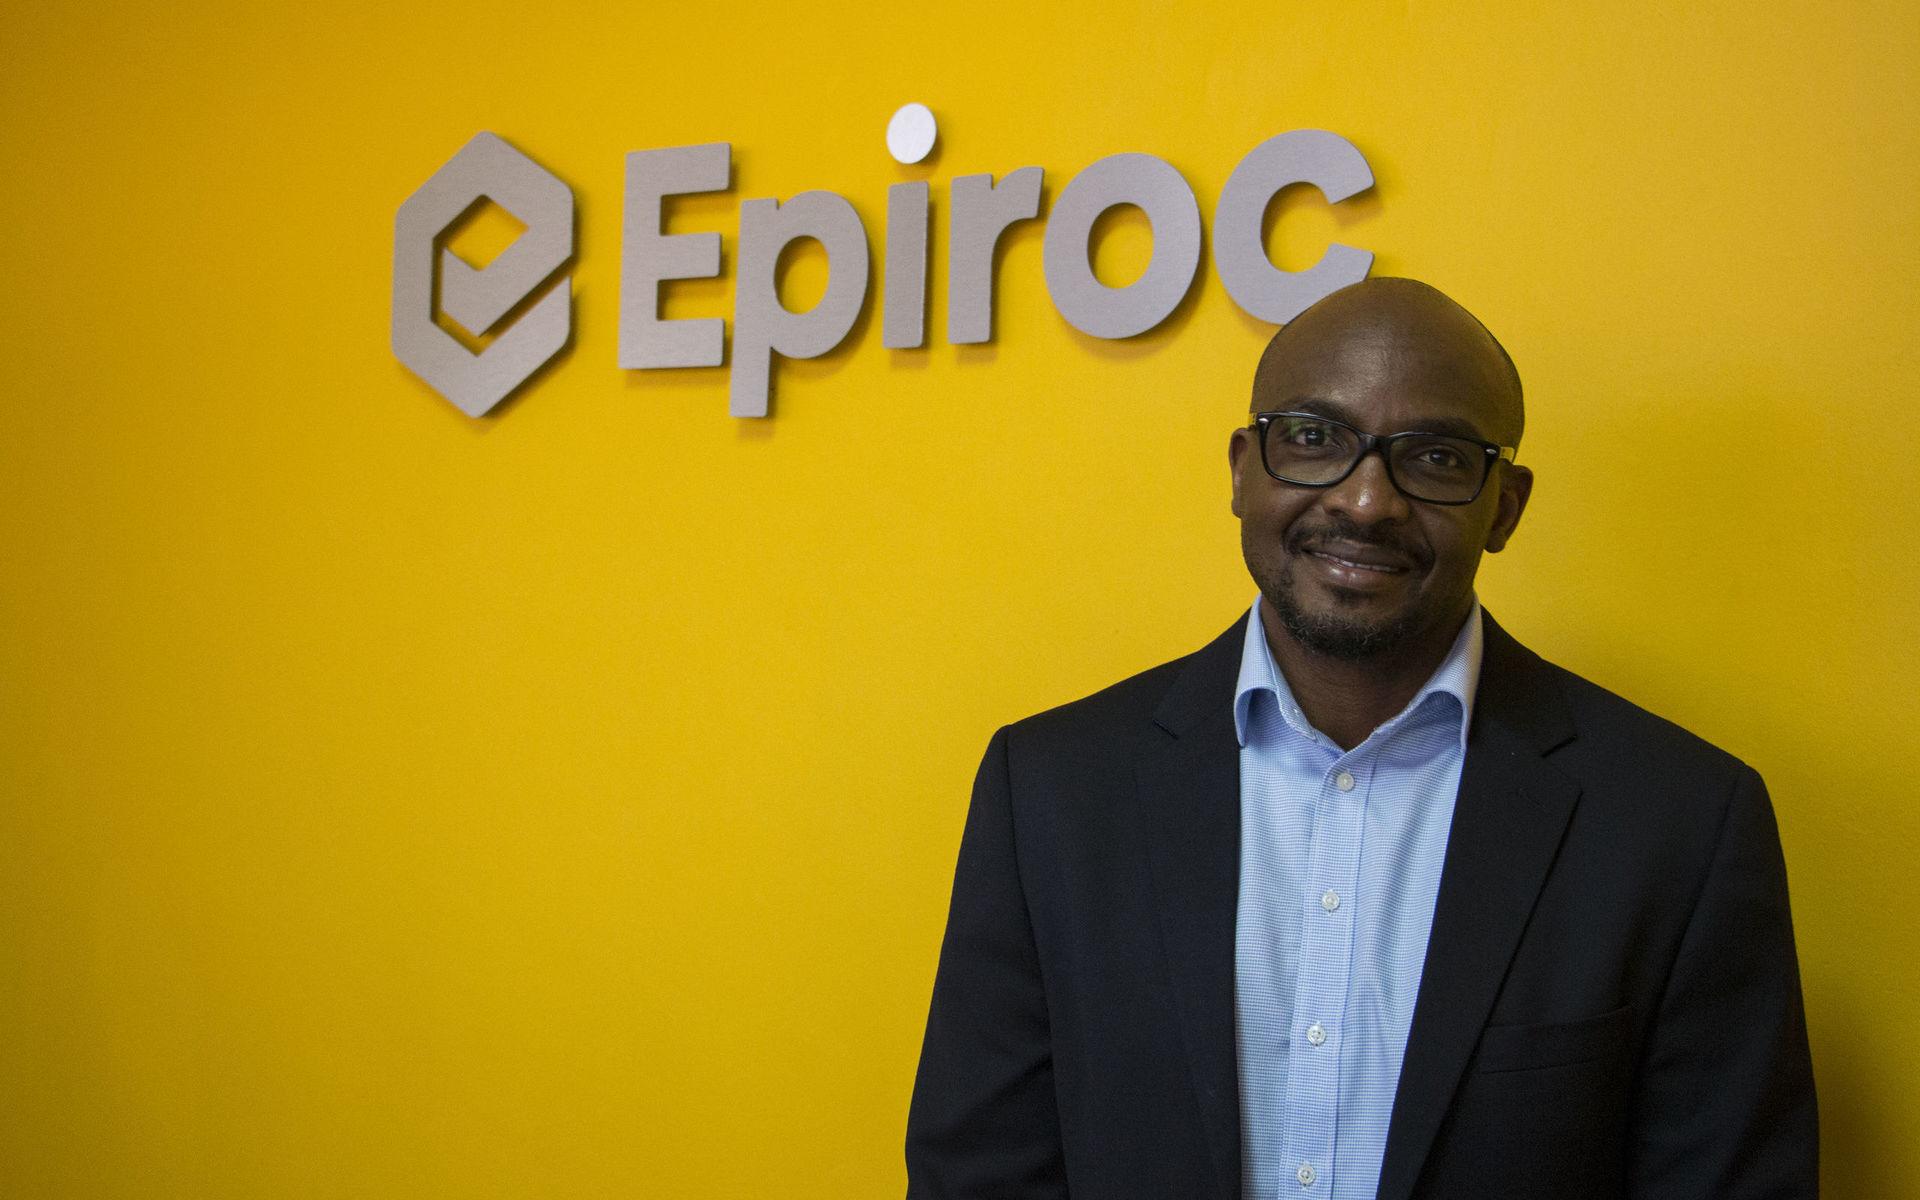 Patrick Chanda är landchef för Epiroc i Zambia. Han verkar oförstående inför vikten av transparens, men trycker på att de ställer höga krav på alla företag de jobbar med att skriva under på Epirocs uppförandekod och är tydliga med att säkerhet och miljö är viktiga hållbarhetsparametrar för företaget.